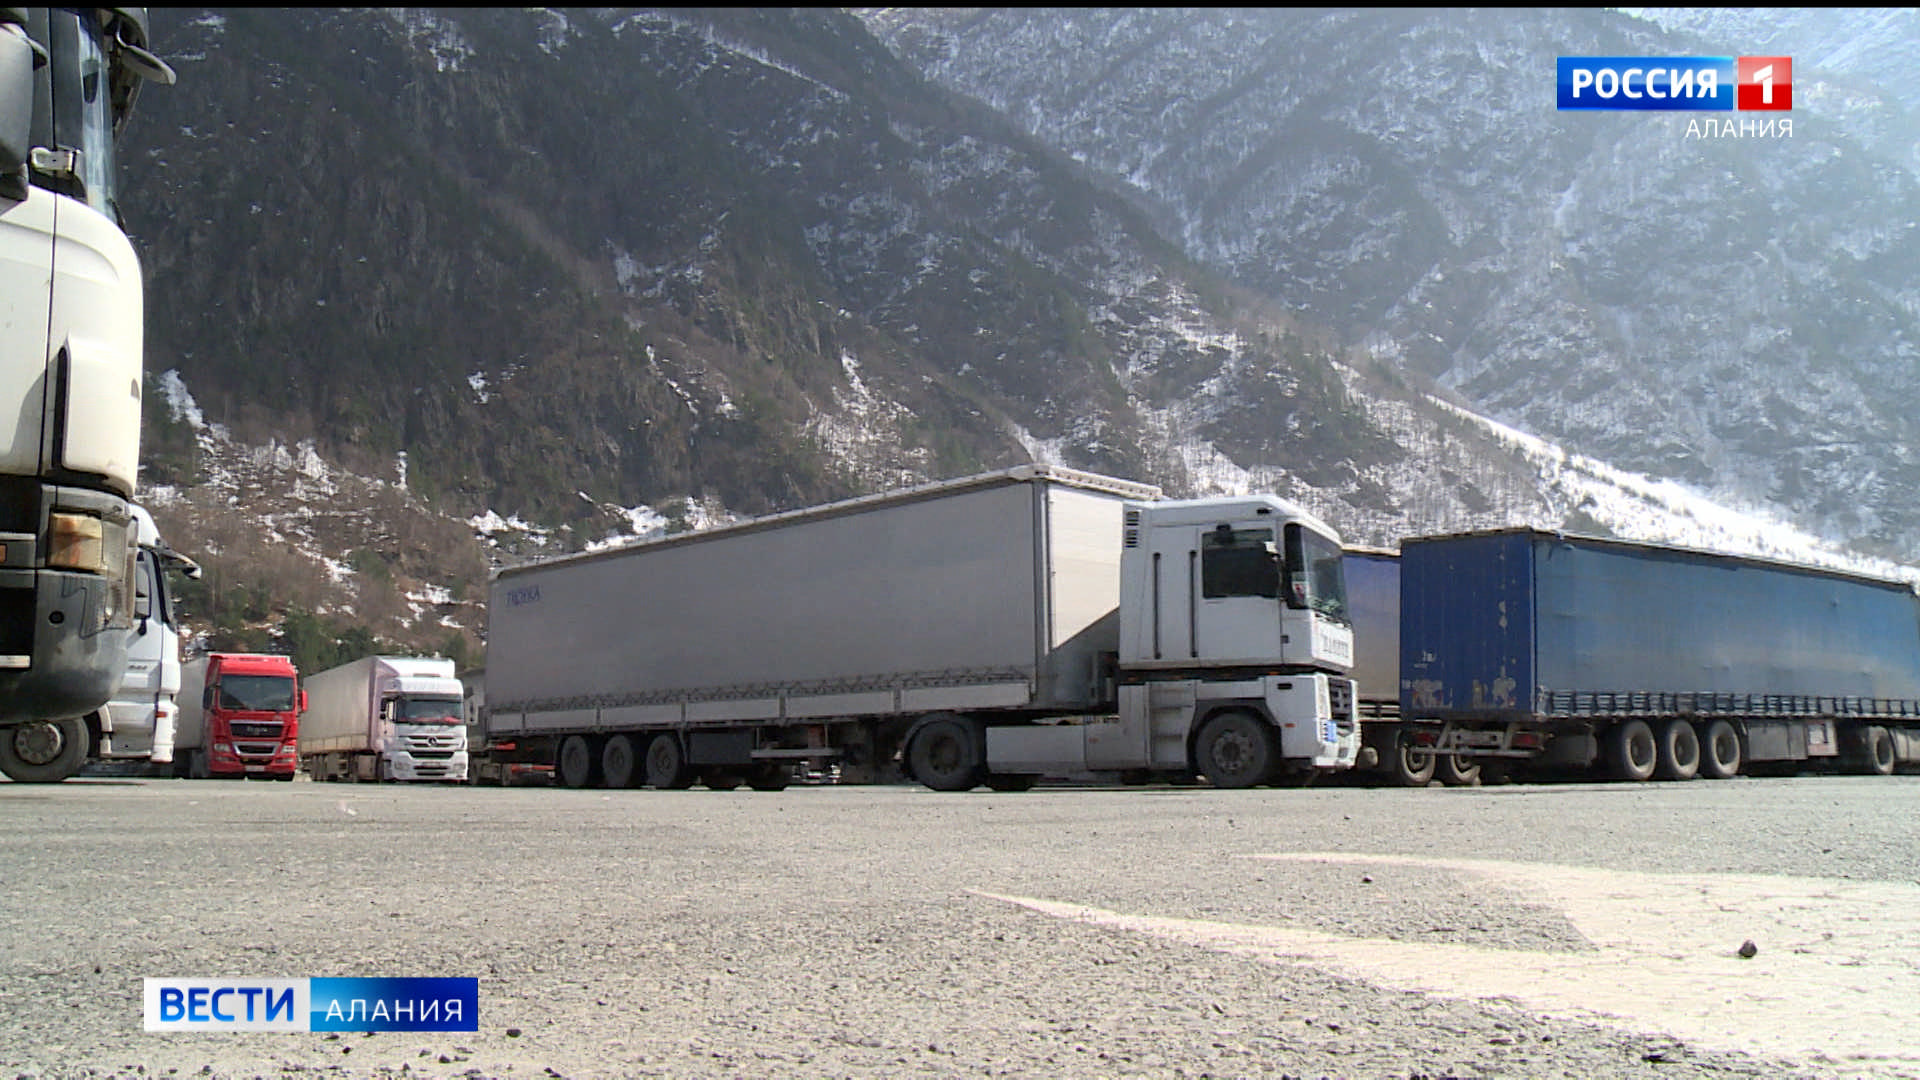 Транзитным большегрузам запретили останавливаться на стоянку на обочинах дорог в Северной Осетии